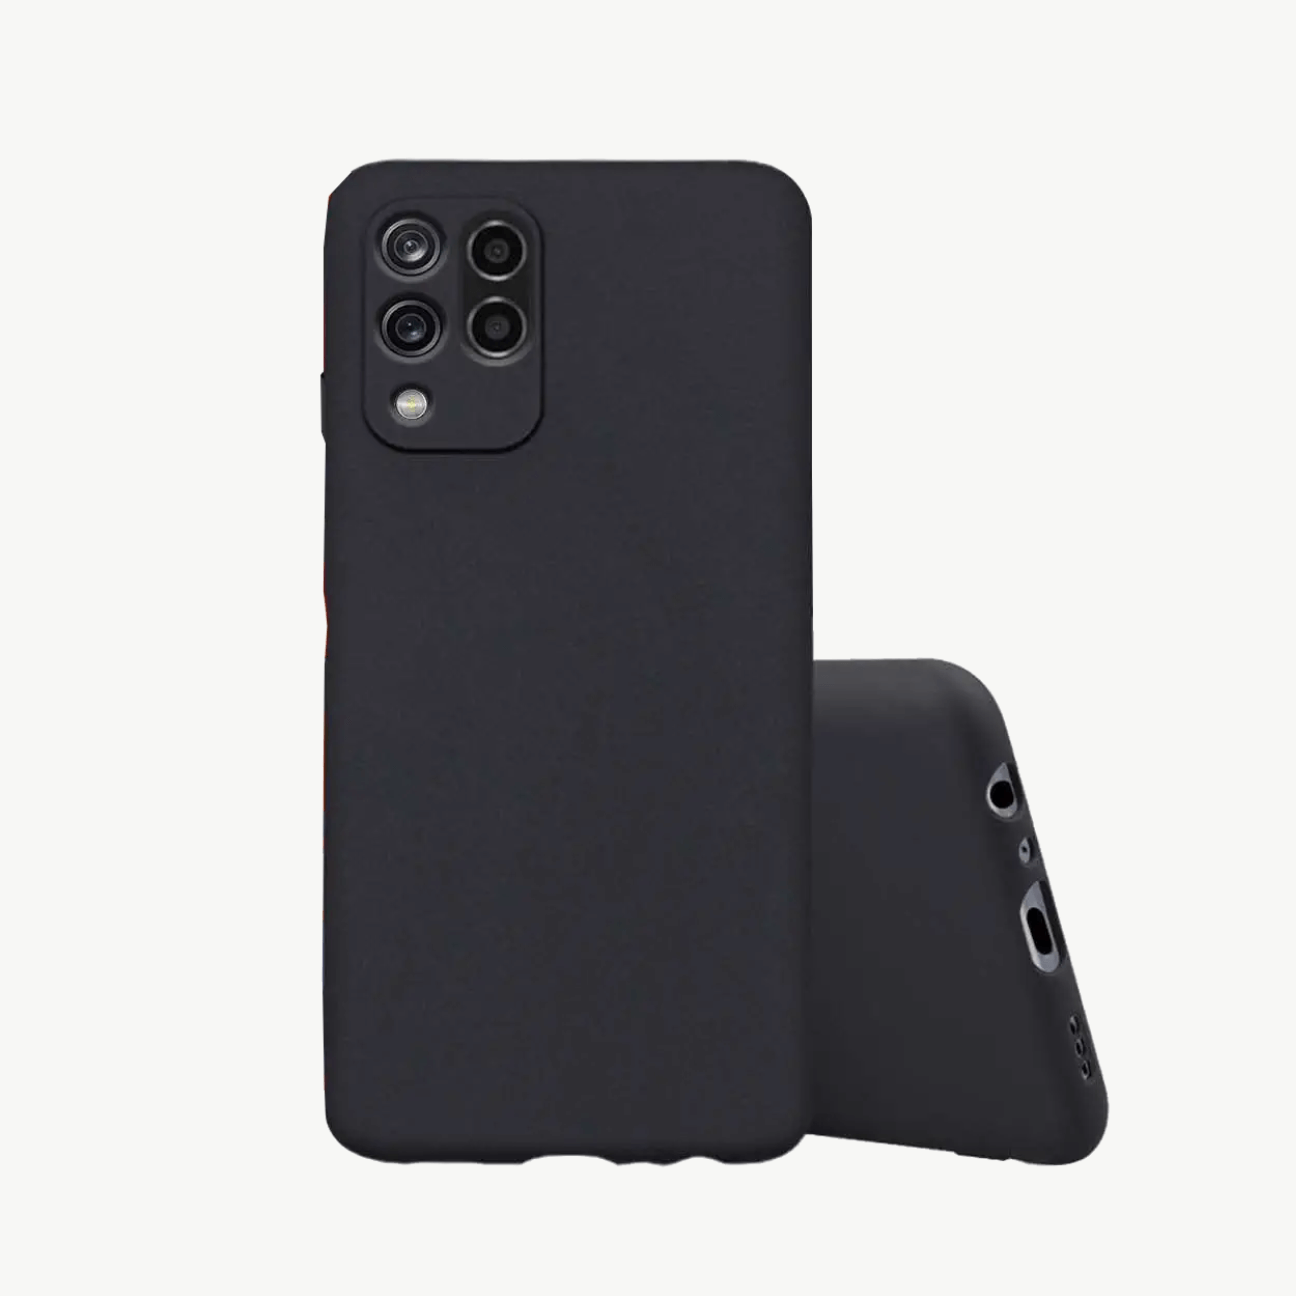 Xiaomi Poco F1 Black Soft Silicone Phone Case Image